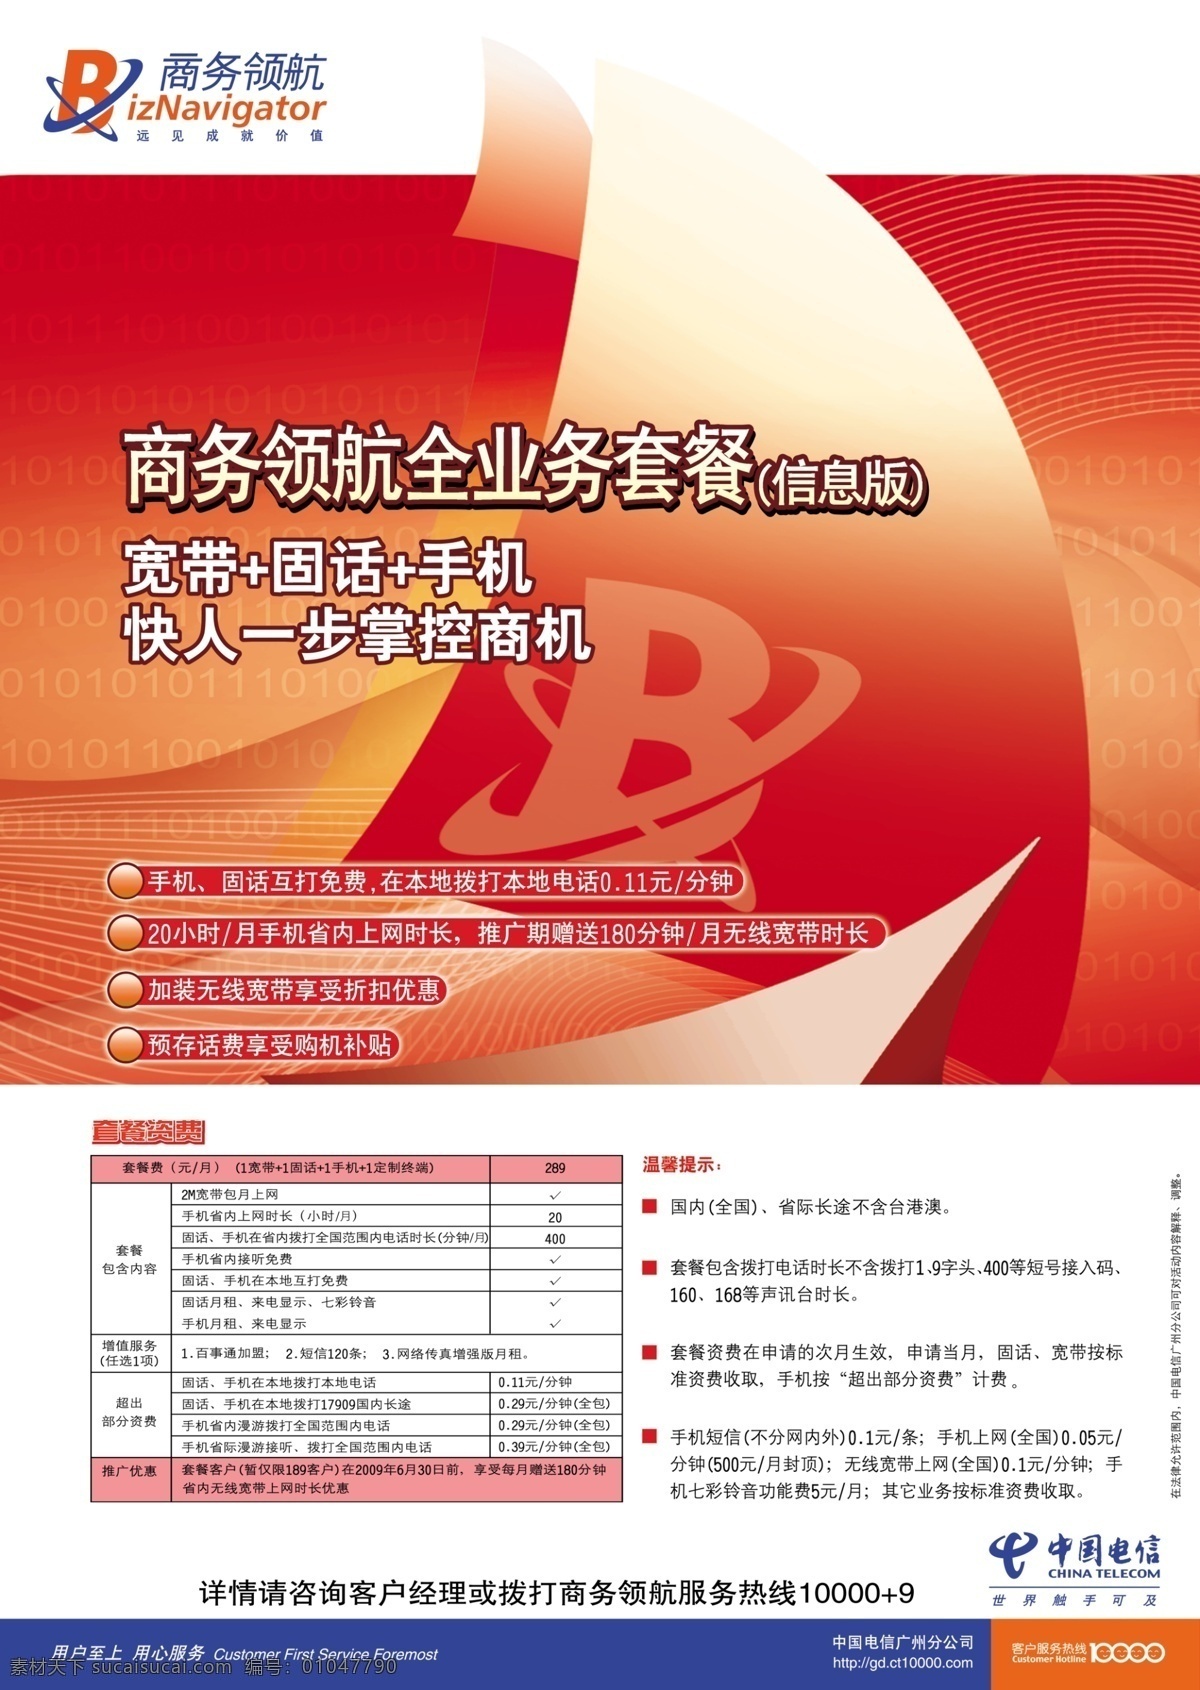 中国电信 新版 商务 领航 海报 b 广告设计模板 源文件库 其他海报设计